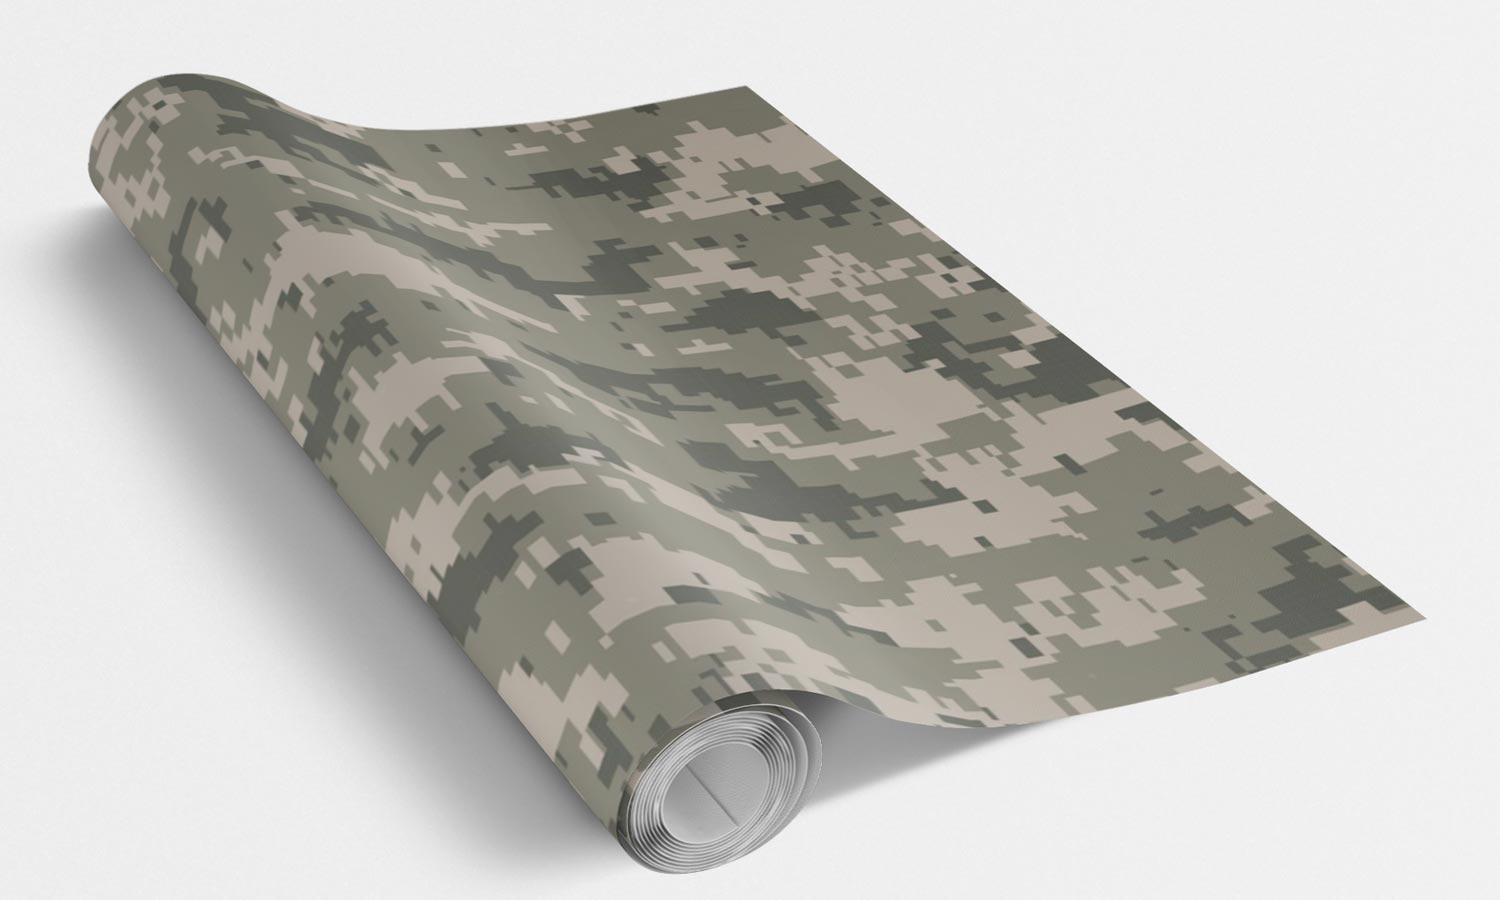 Samoljepljiva maskirna folija za oslikavanje - Digital camouflage PAT203